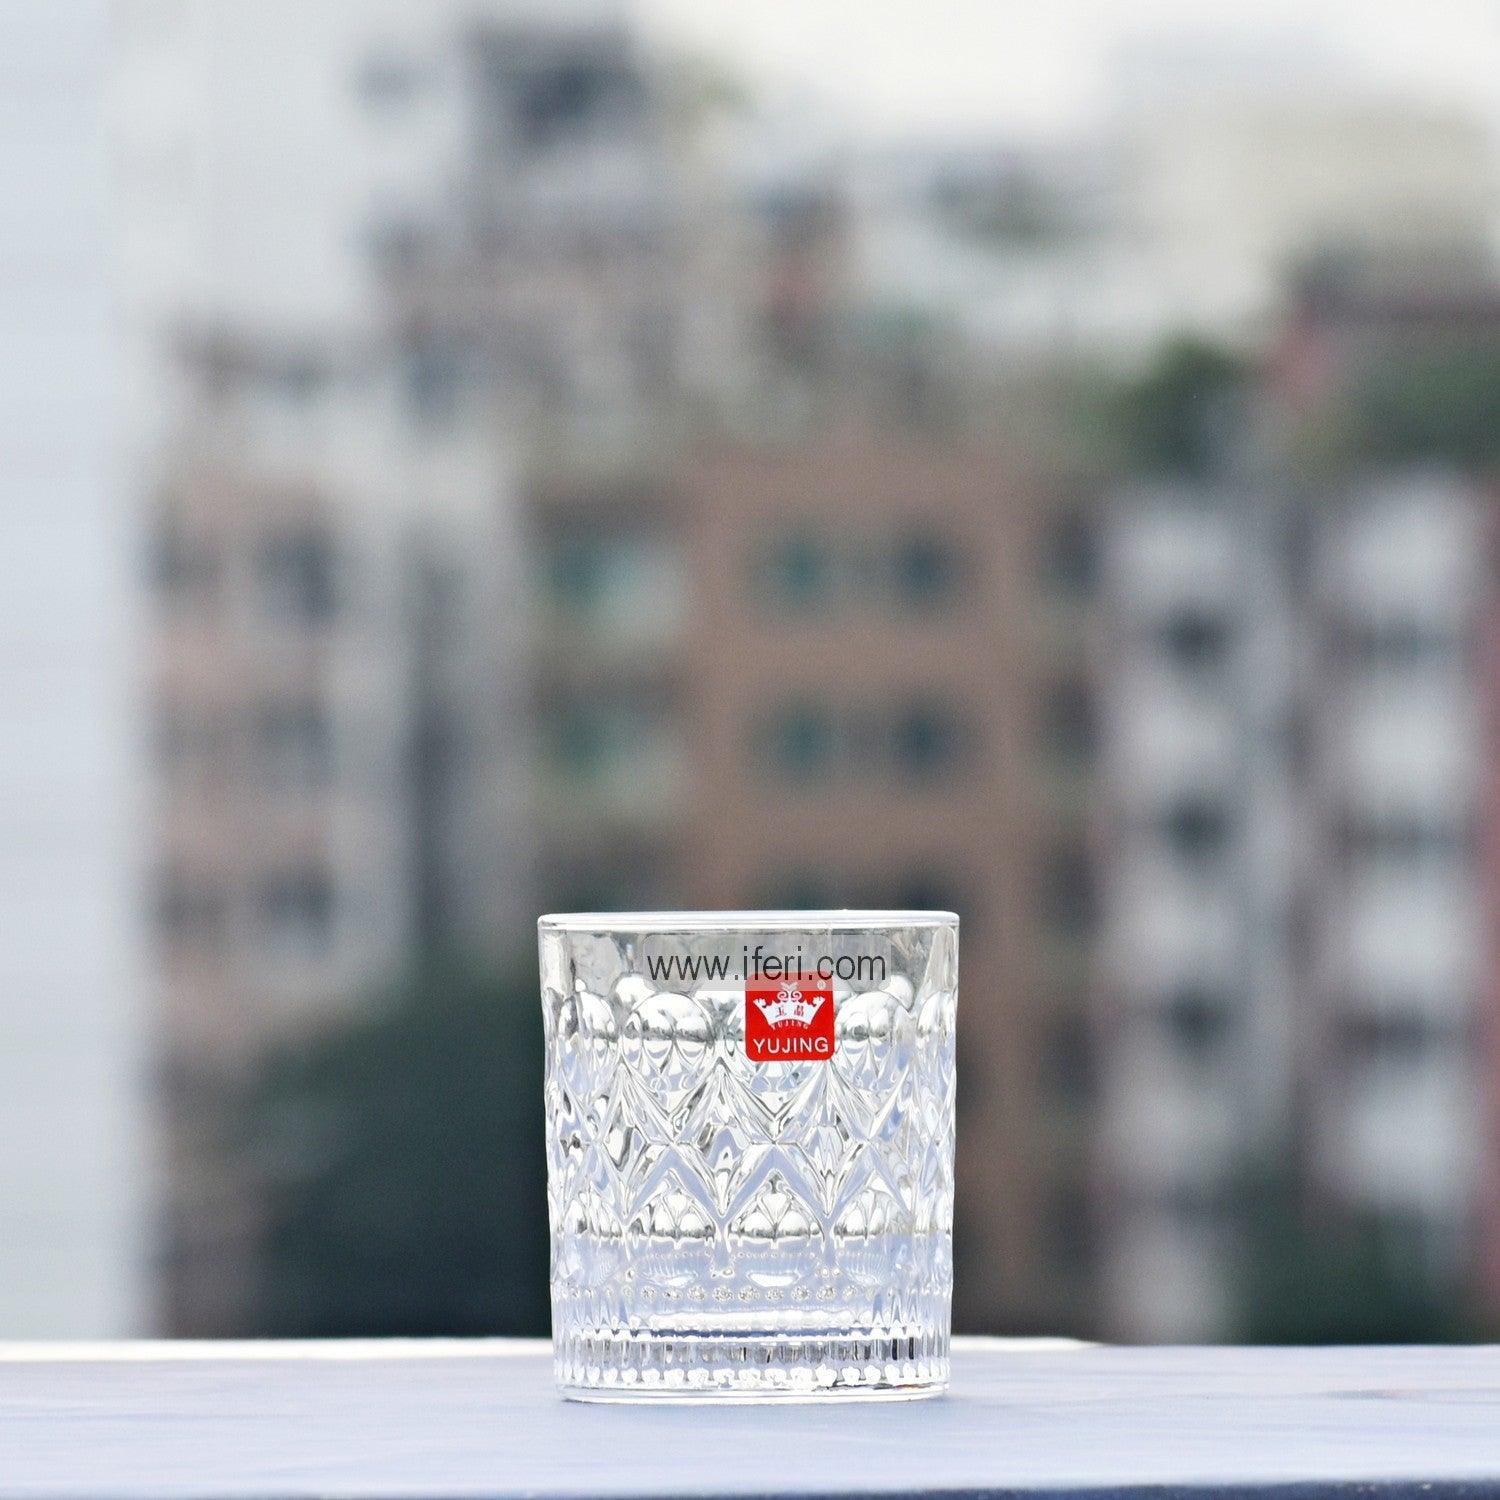 6 Pcs Water Juice Glass Set RH8298 Price in Bangladesh - iferi.com